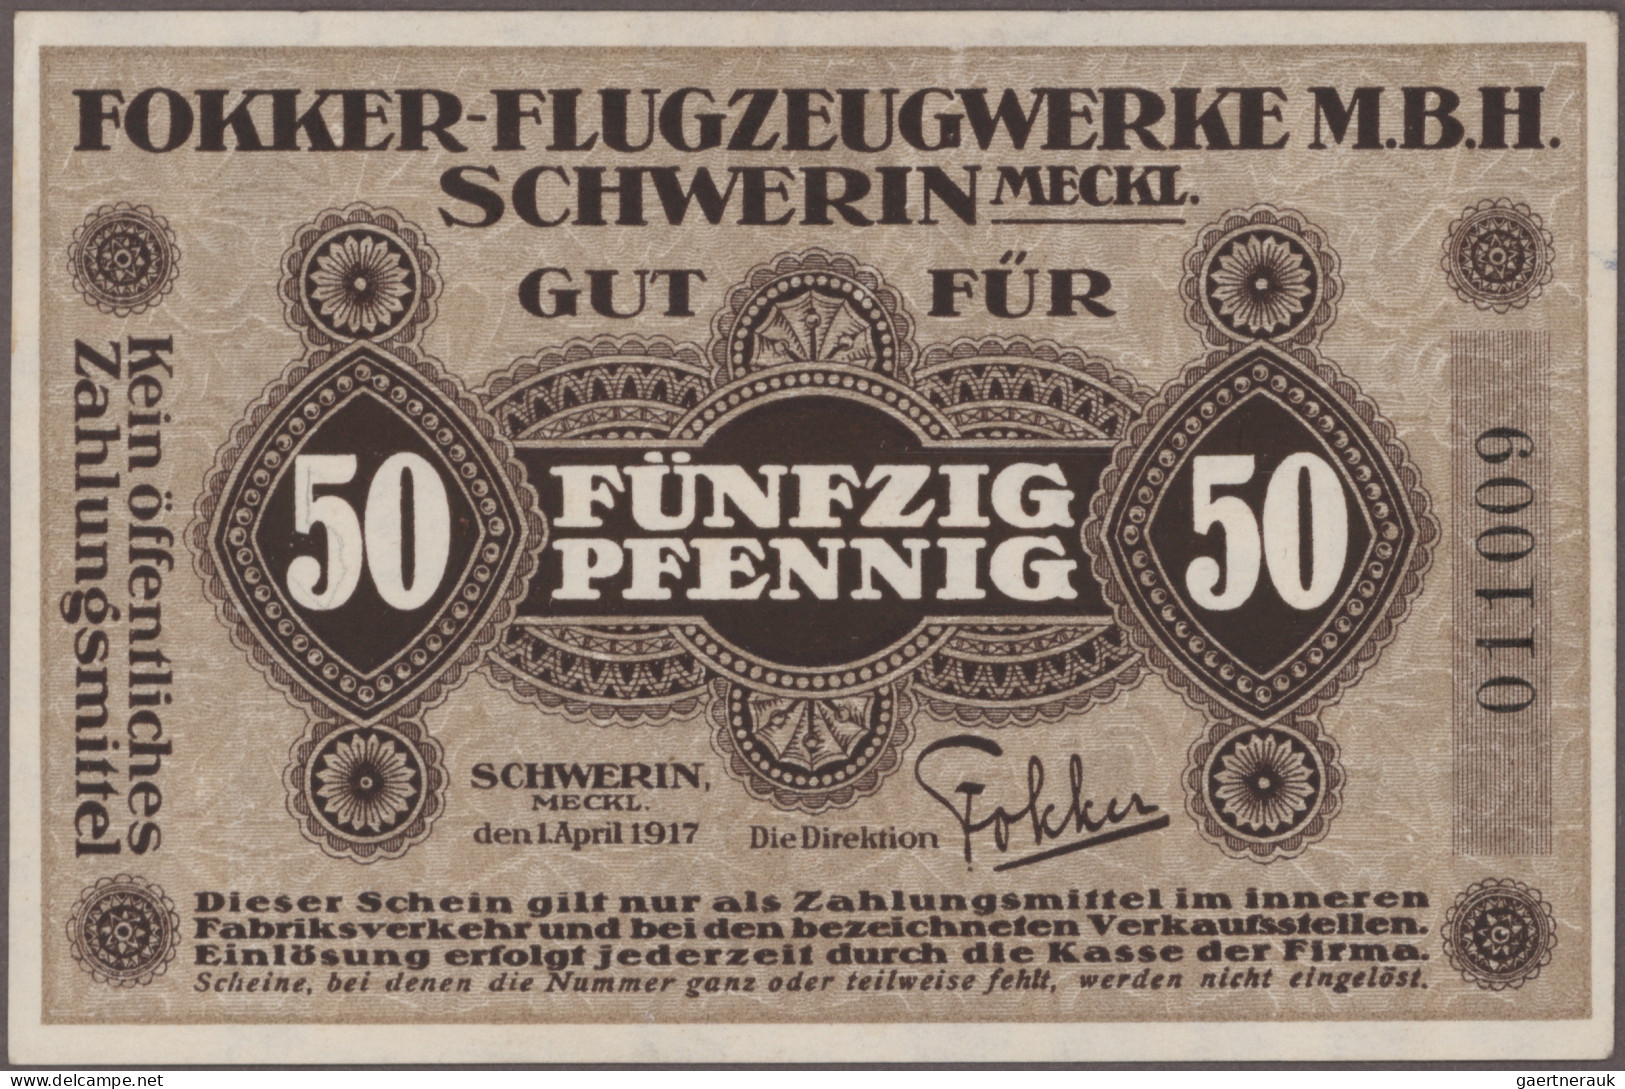 Deutschland - Notgeld: Kleingeldscheine, Zusammenstellung besserer Ausgaben mit